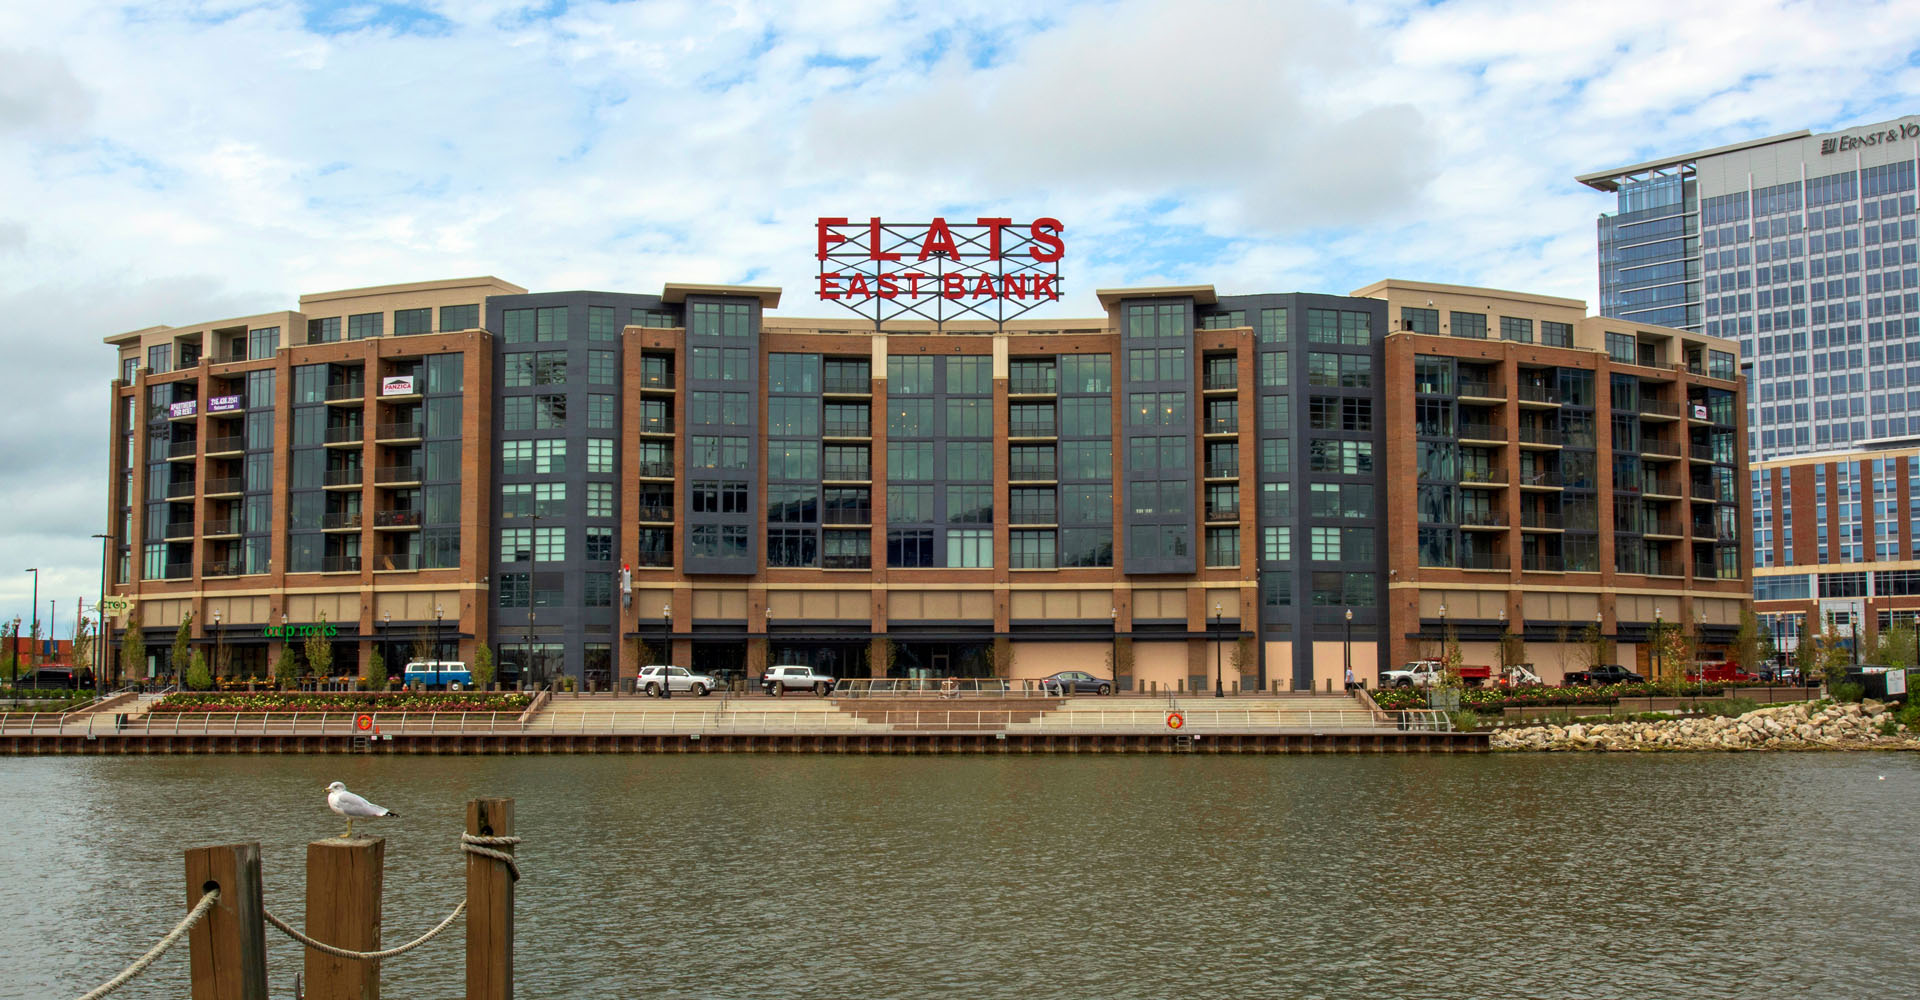 Hotels - Flats East Bank Apartments - Panzica Construction